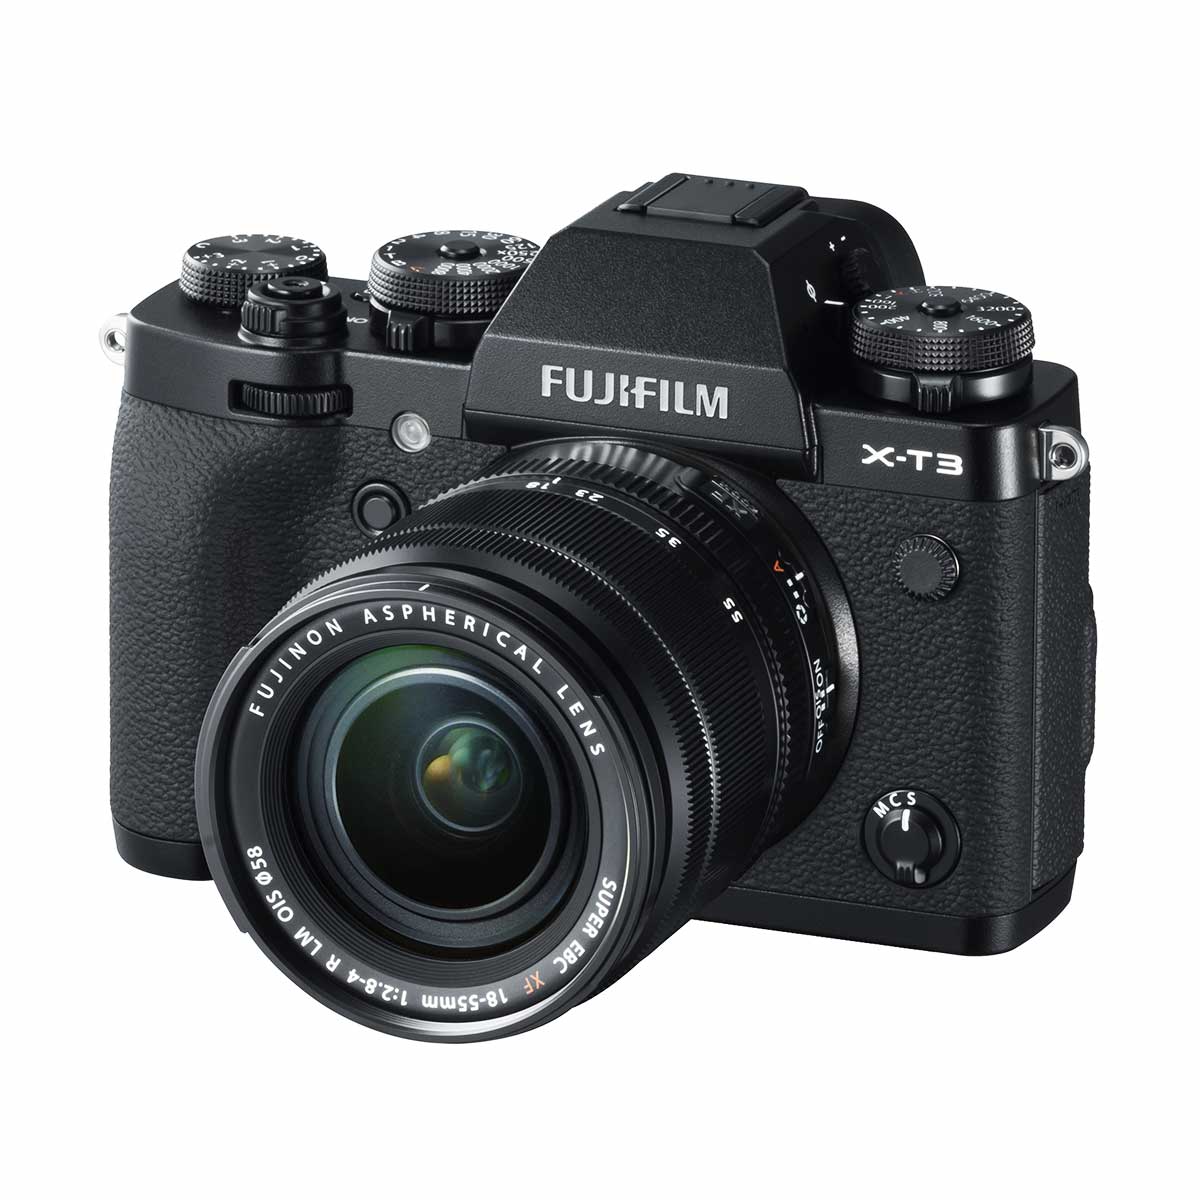 Fujifilm X-T3 WW with XF 18-55mm Lens Kit